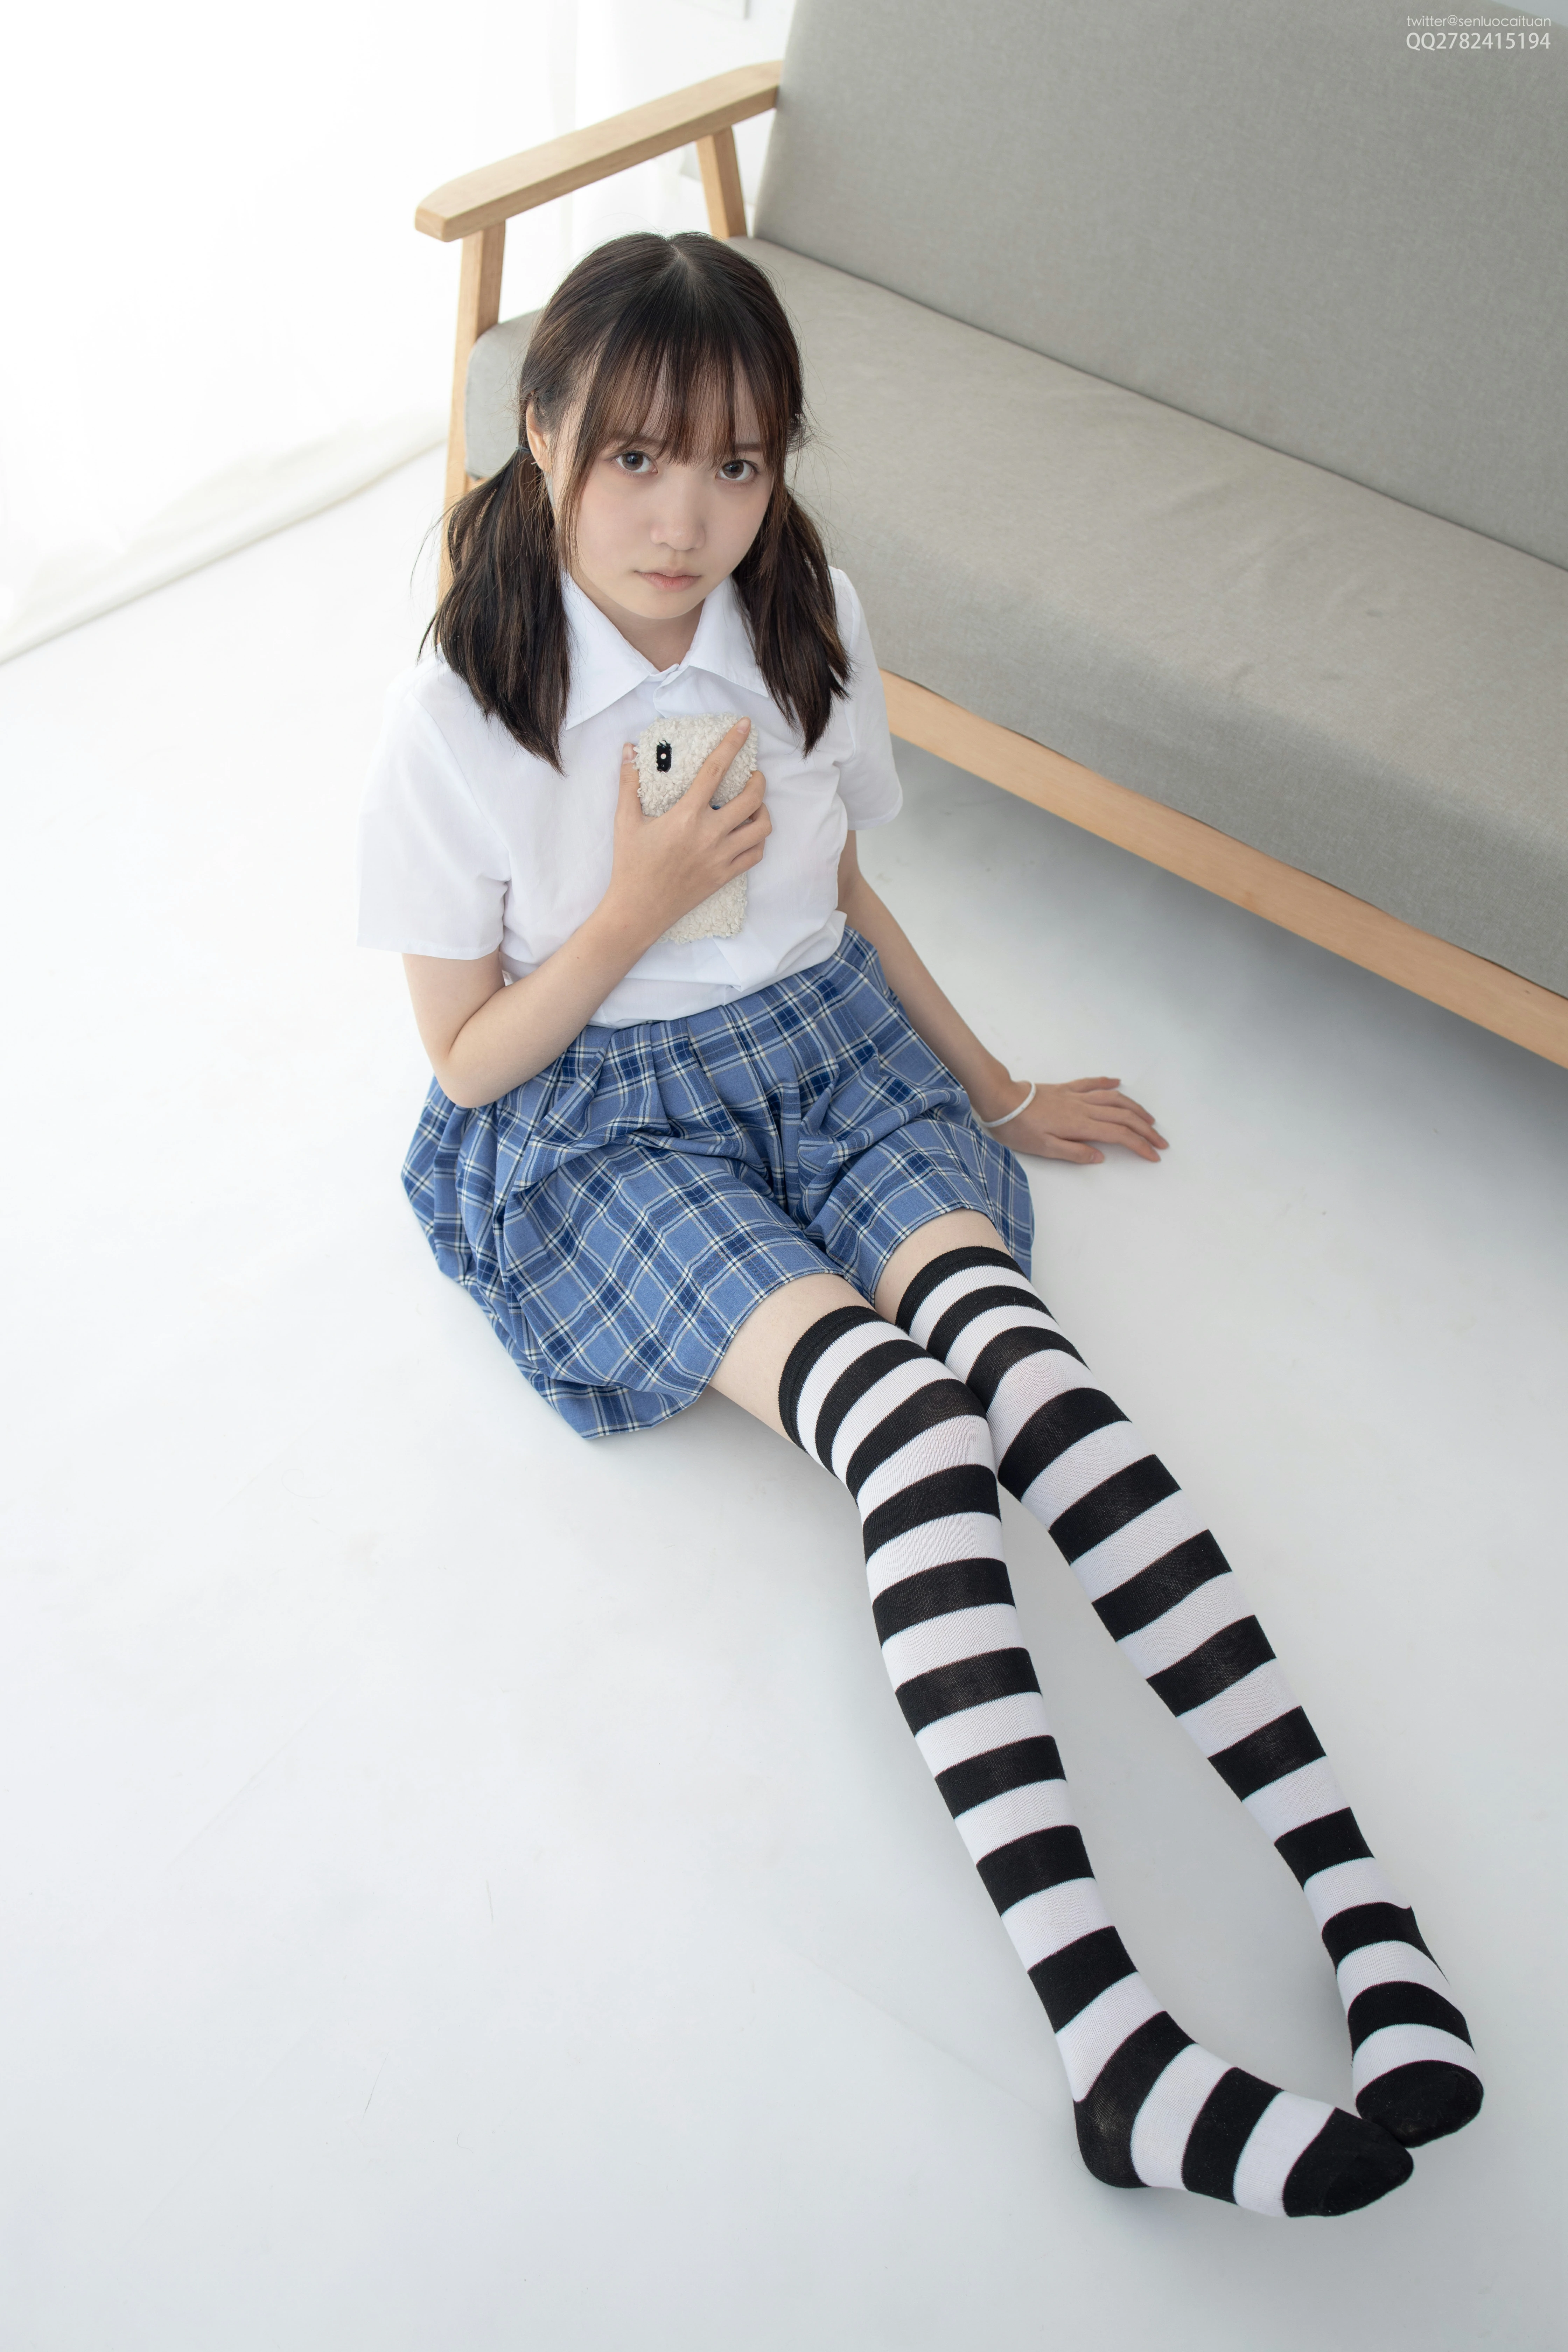 [森萝财团]JKFUN-百元系列1-4 Aika 白色短袖衬衫加格子短裙性感私房写真集,